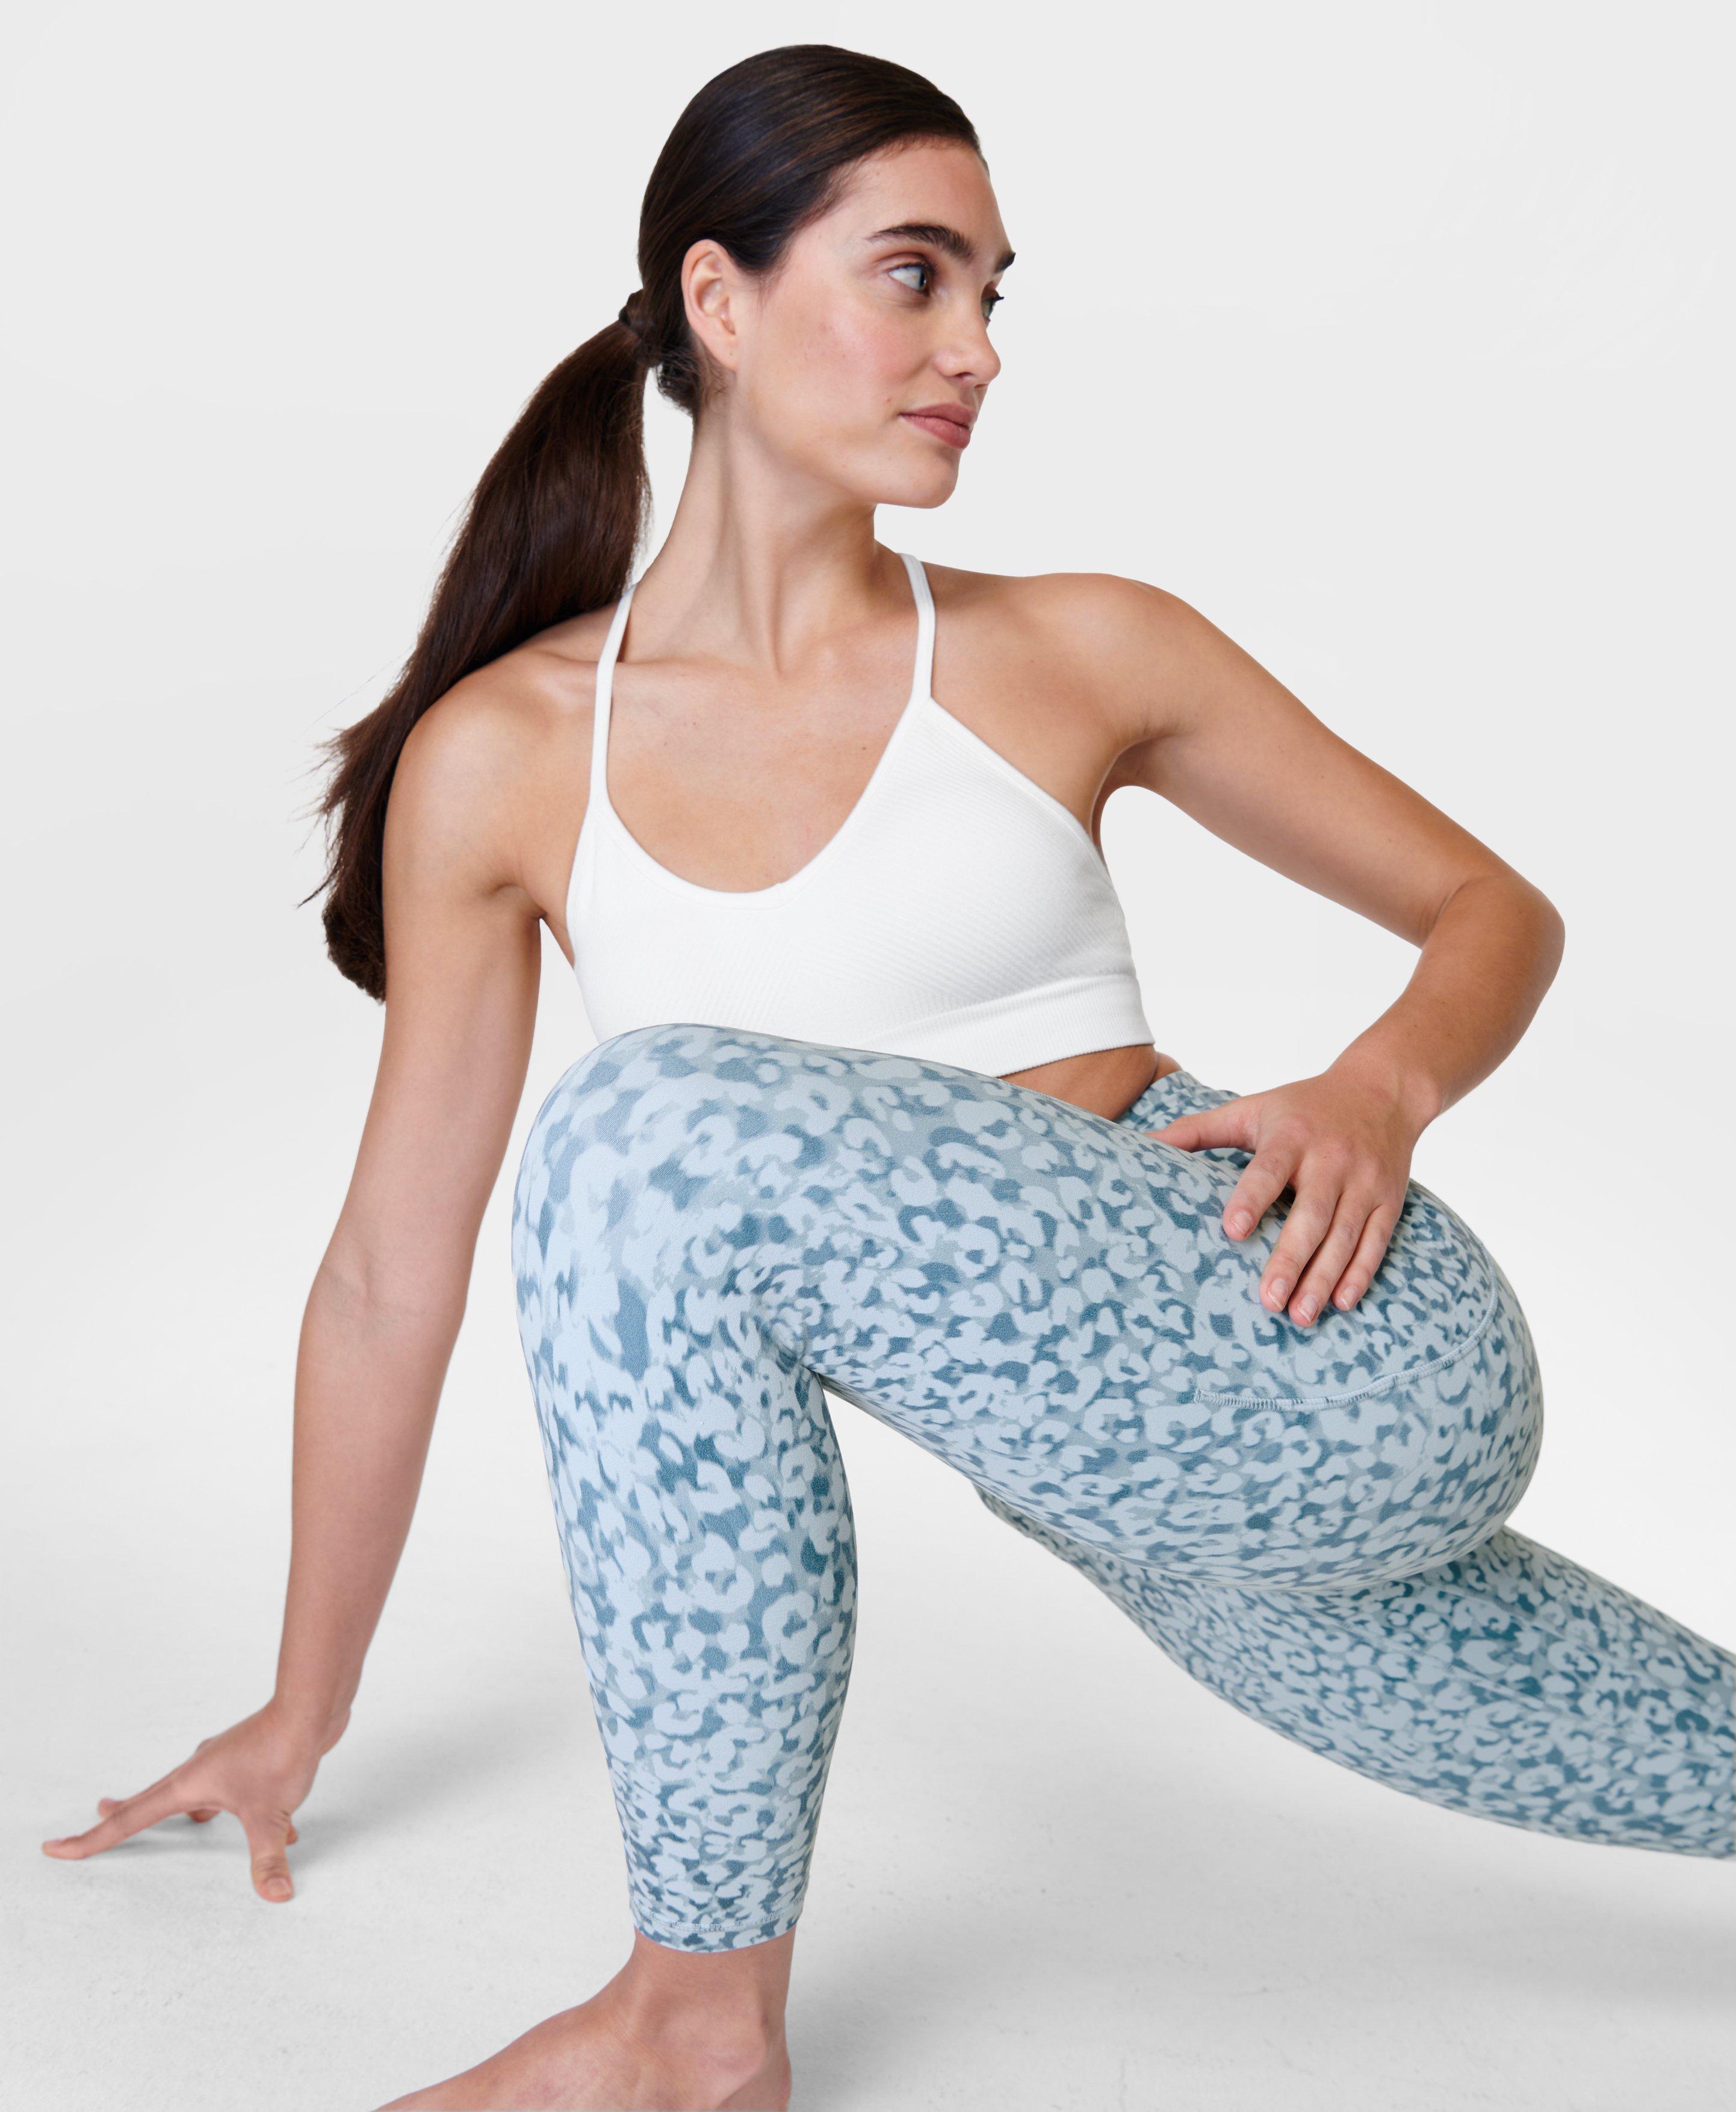 Super Soft 7/8 Yoga Leggings - Blue Snow Leopard Print, Women's Leggings